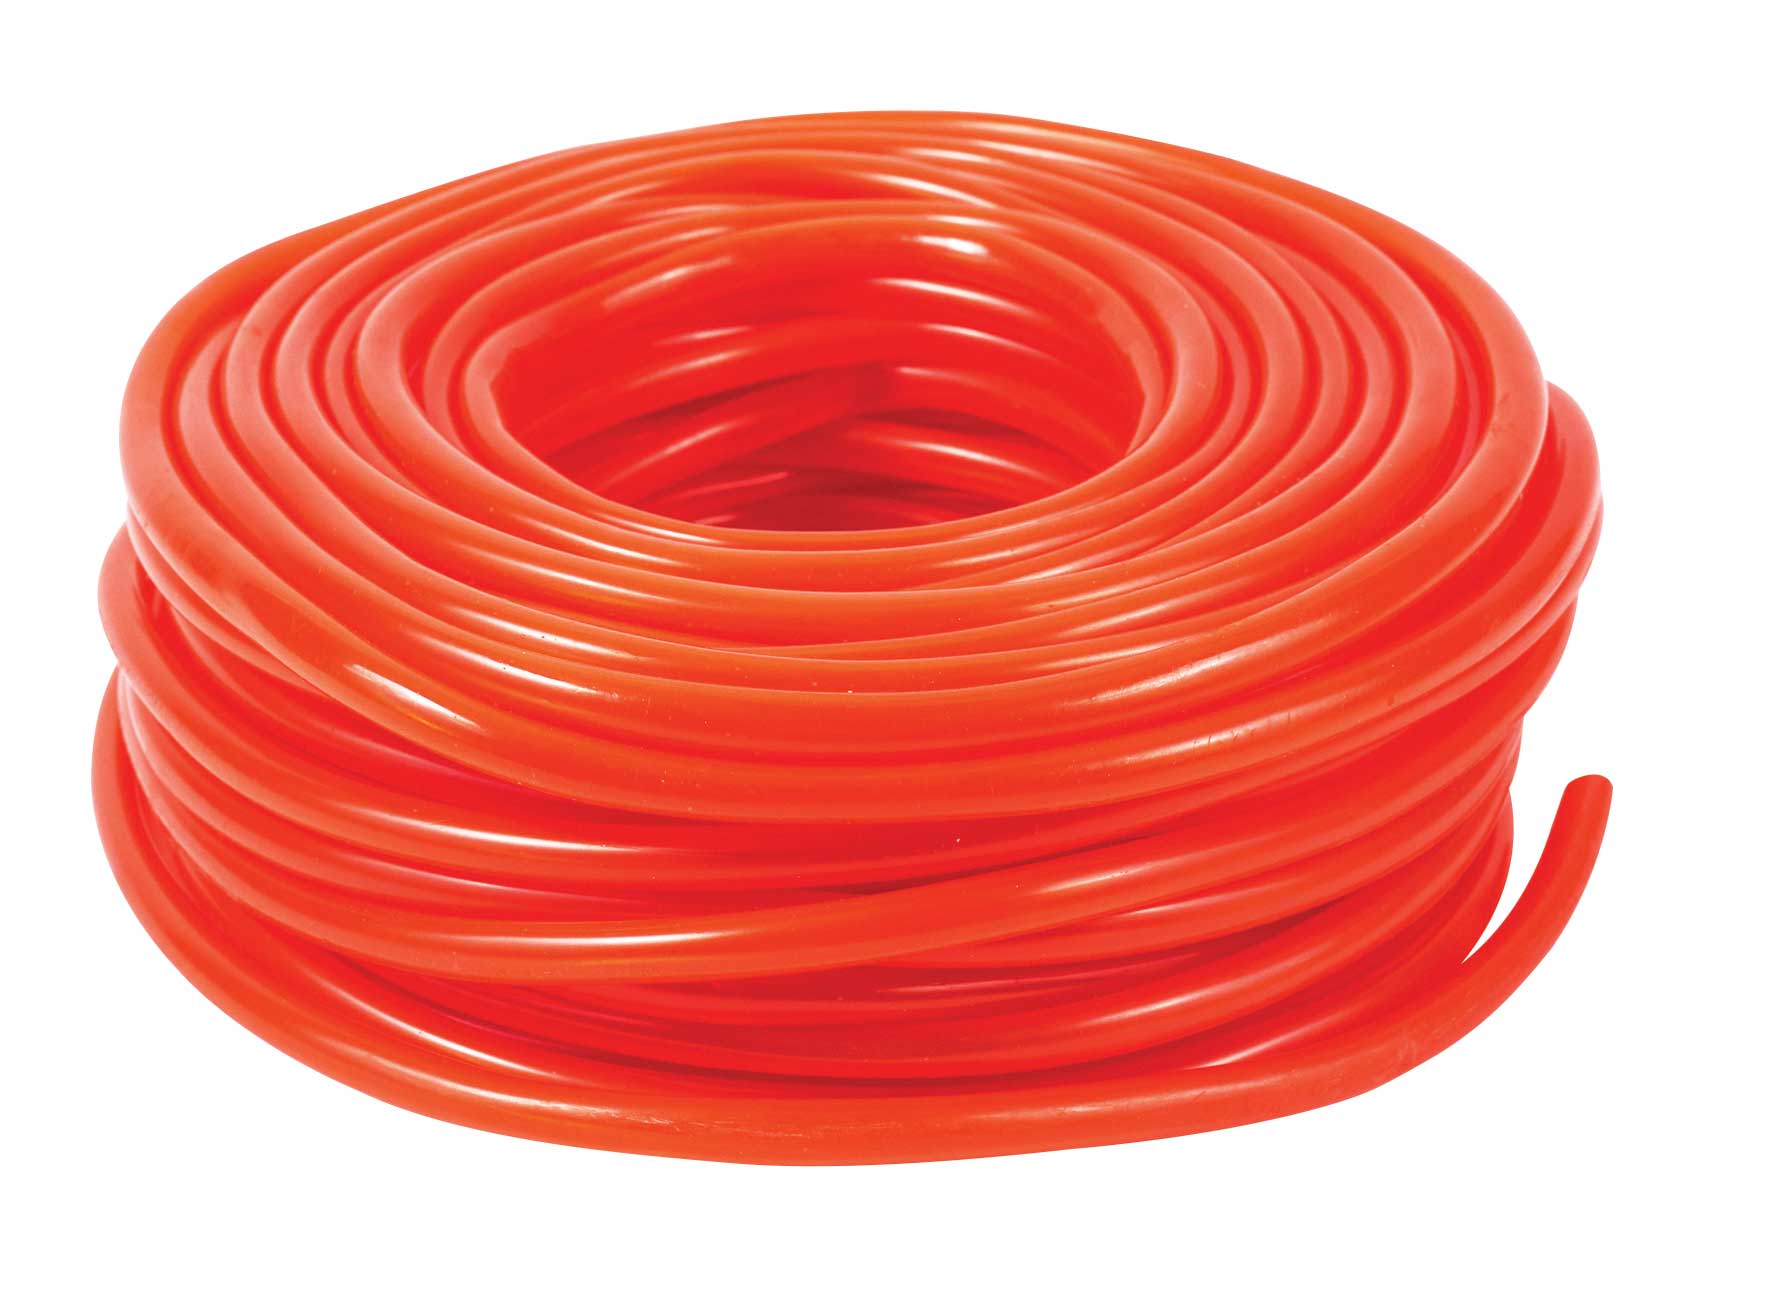 PVC Red Tubing 6mm x 30m